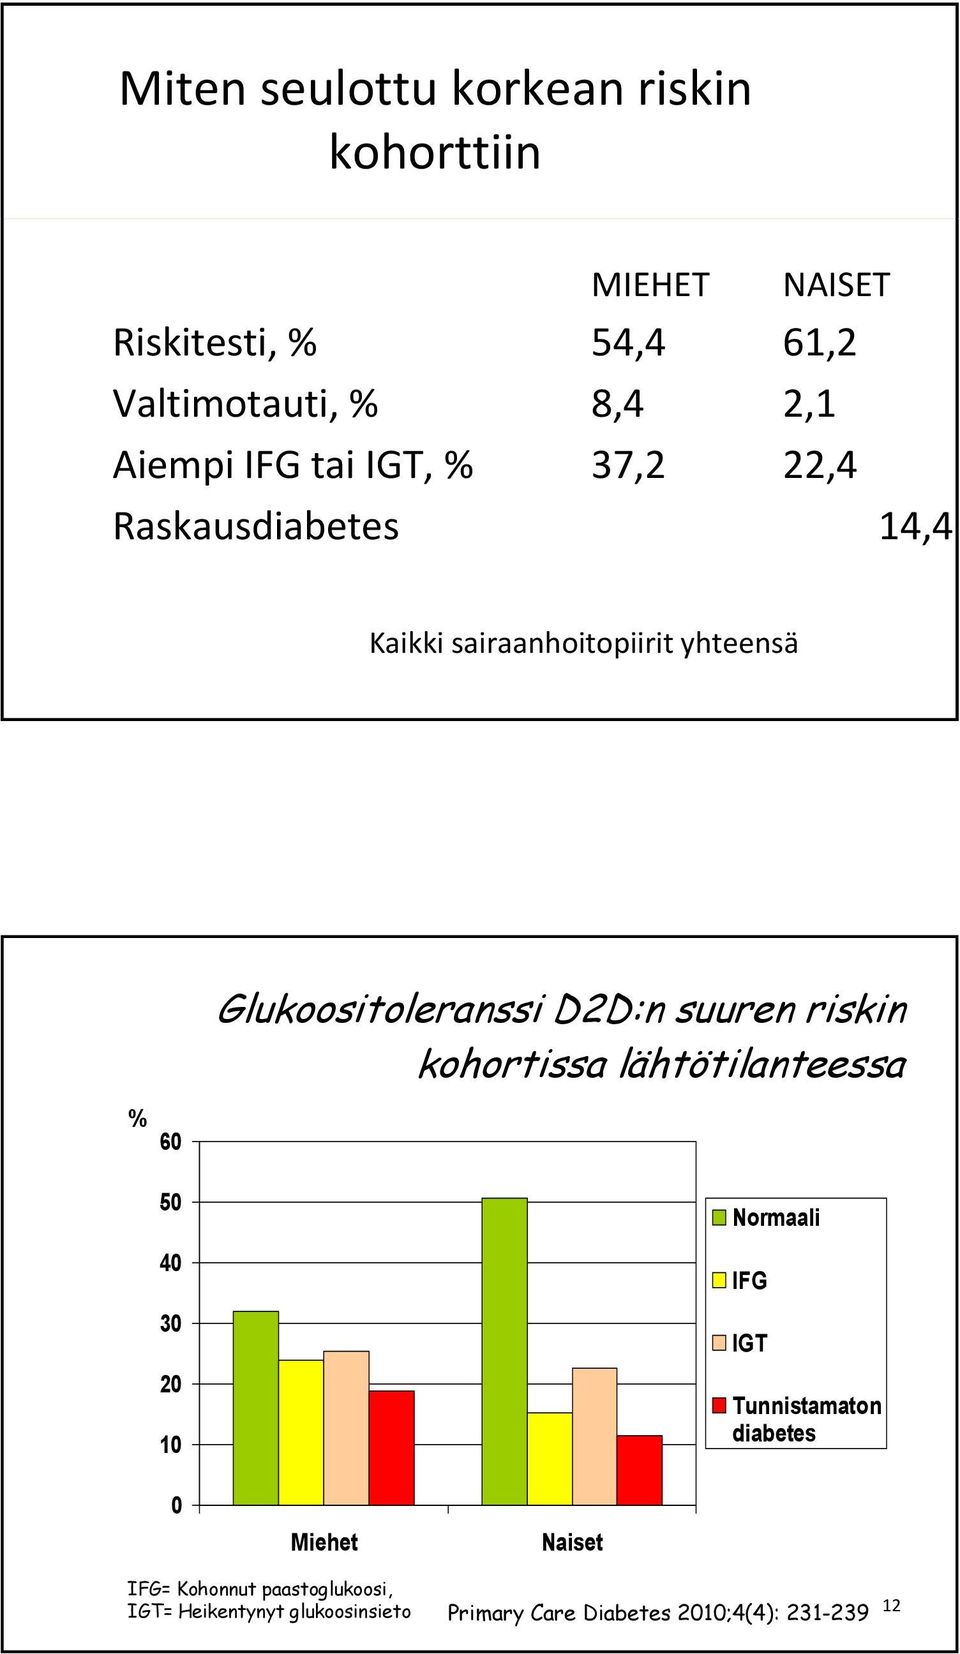 riskin kohortissa lähtötilanteessa % 60 50 40 30 20 10 Normaali IFG IGT Tunnistamaton diabetes 0 Miehet